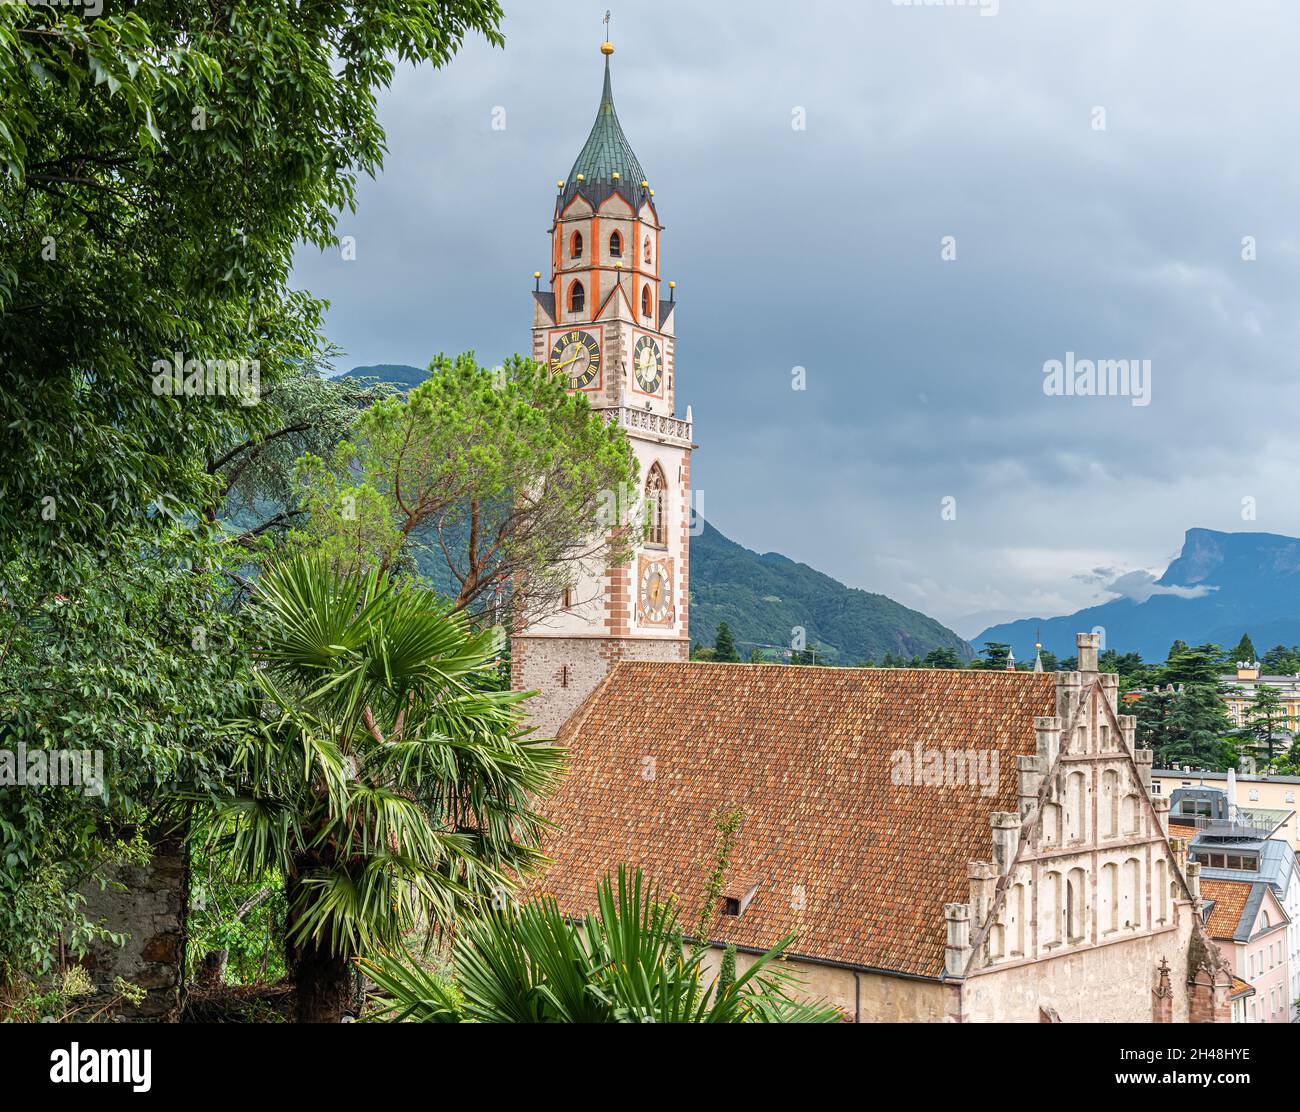 Veduta di Merano in Alto Adige con la chiesa parrocchiale di San Nicola dei secoli XIV e XV - Italia. Foto Stock